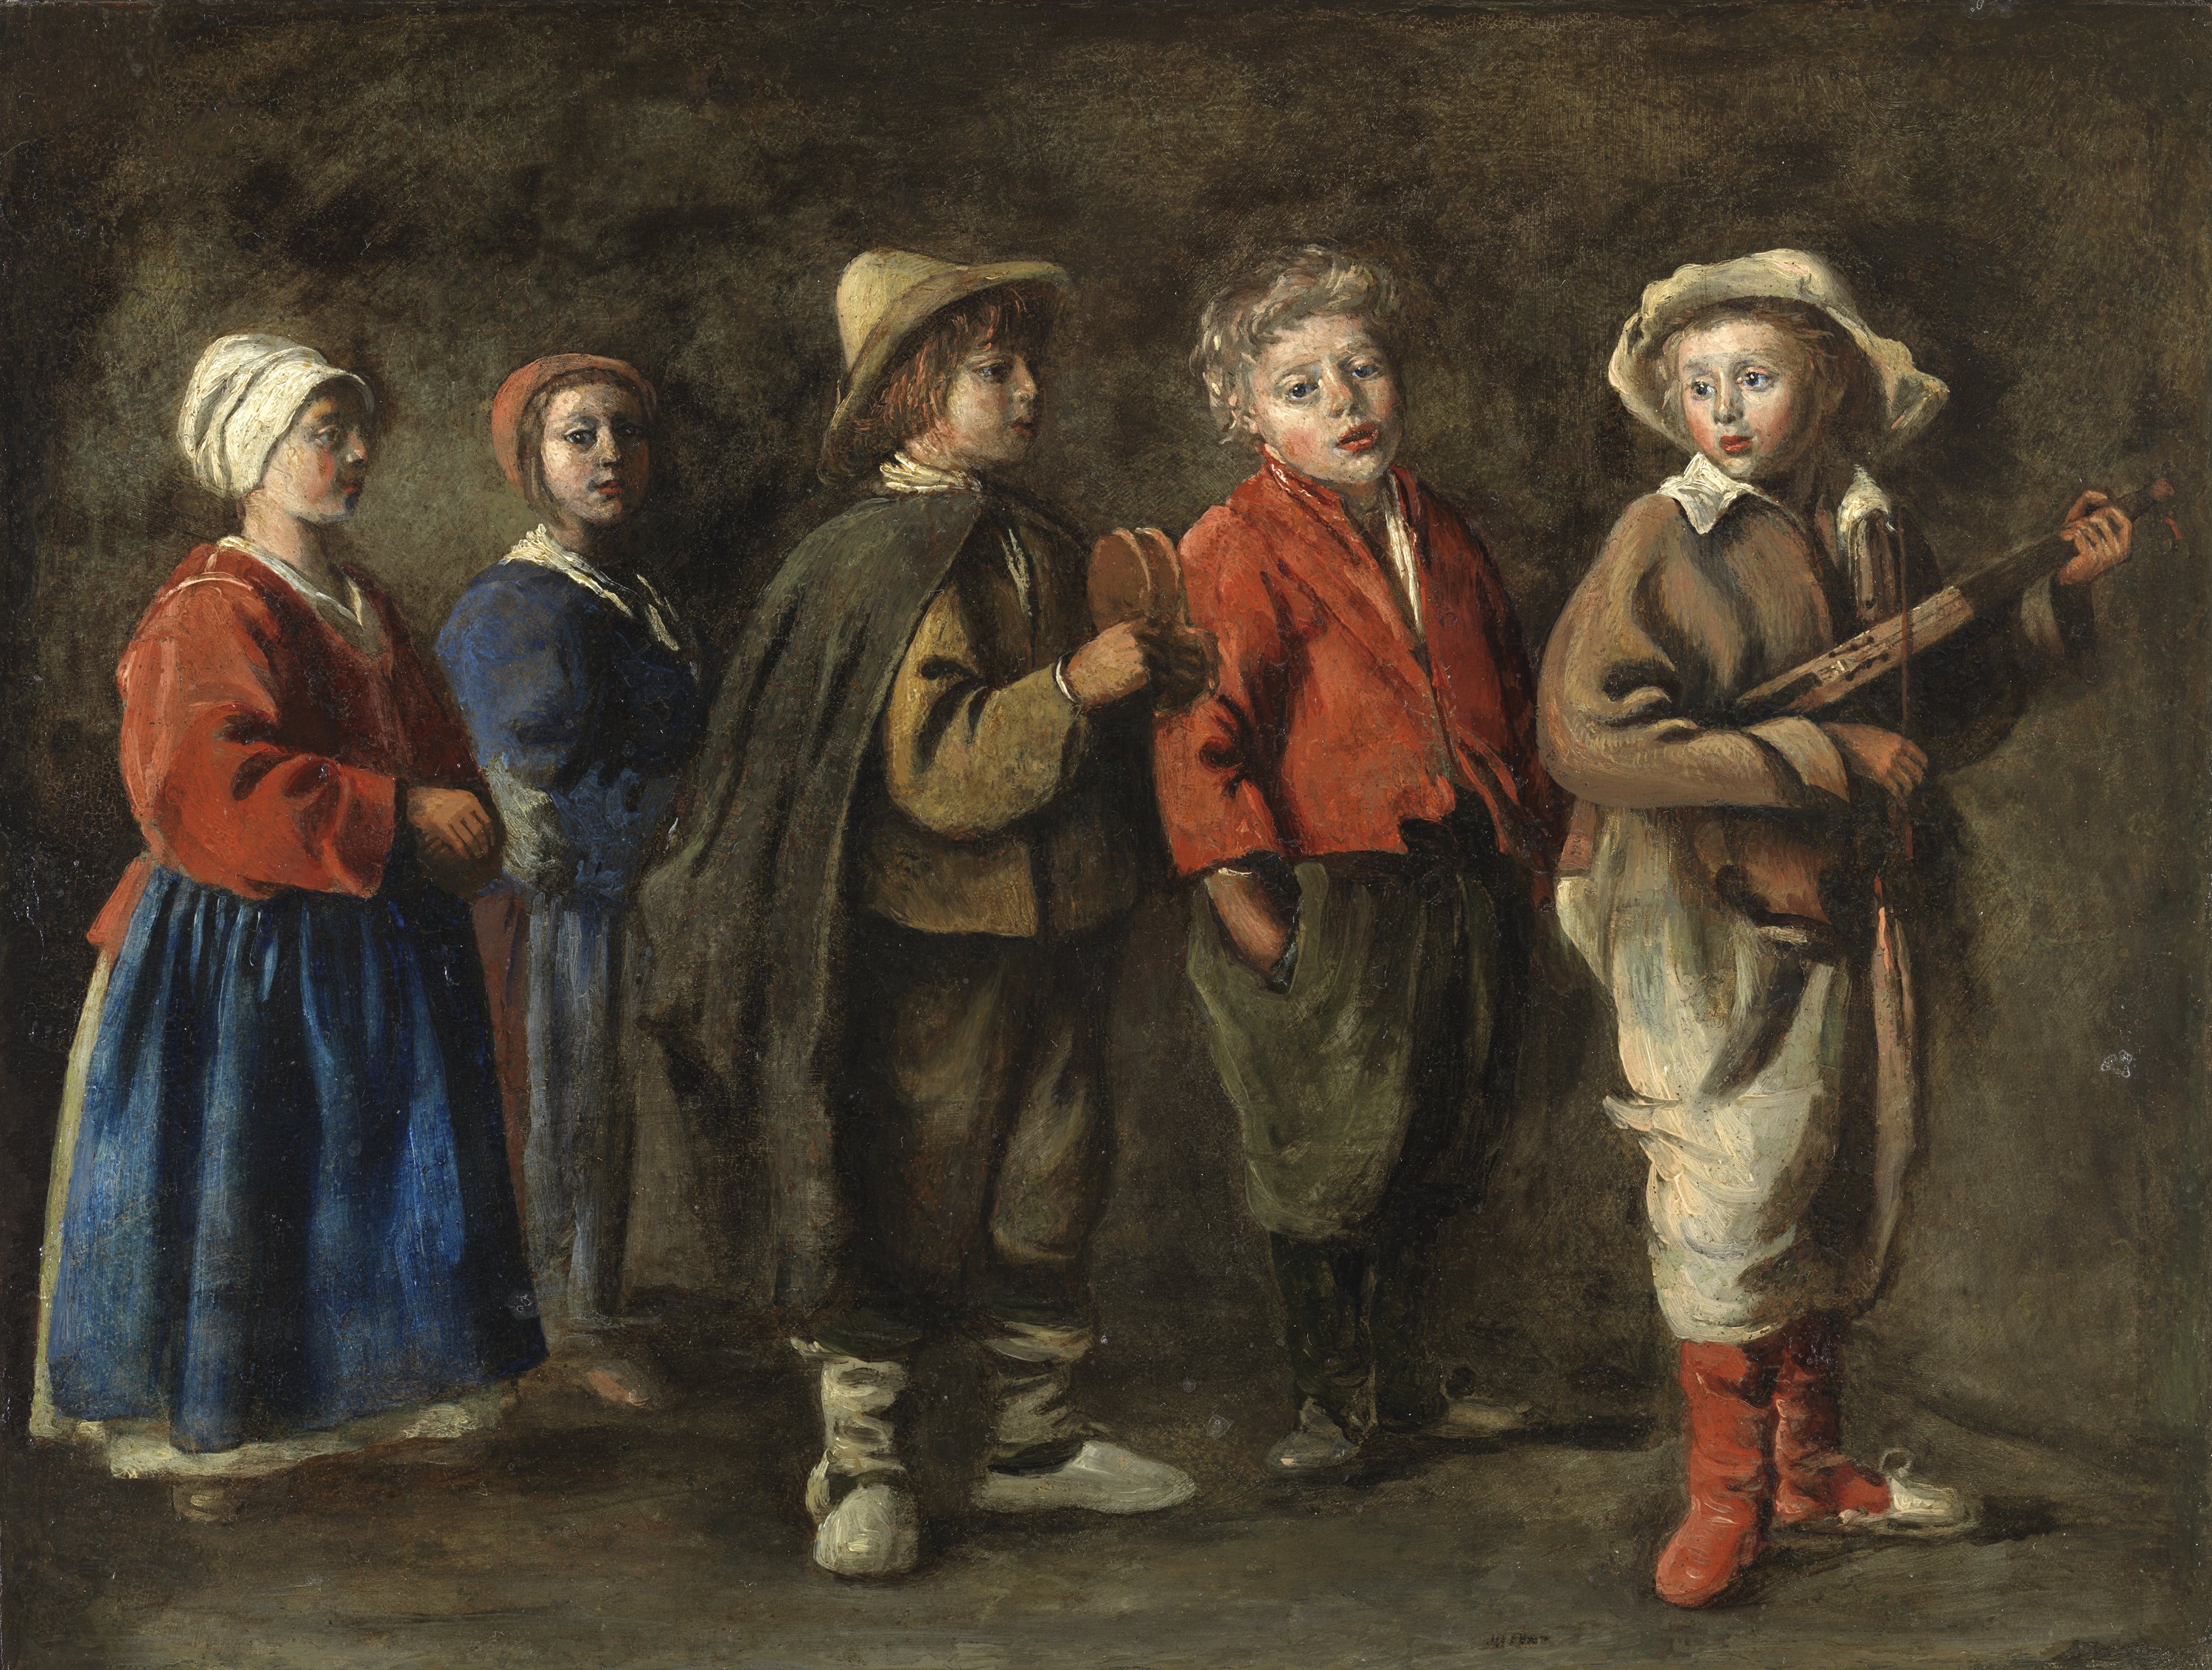 The Young Musicians. Los jóvenes músicos, c. 1640